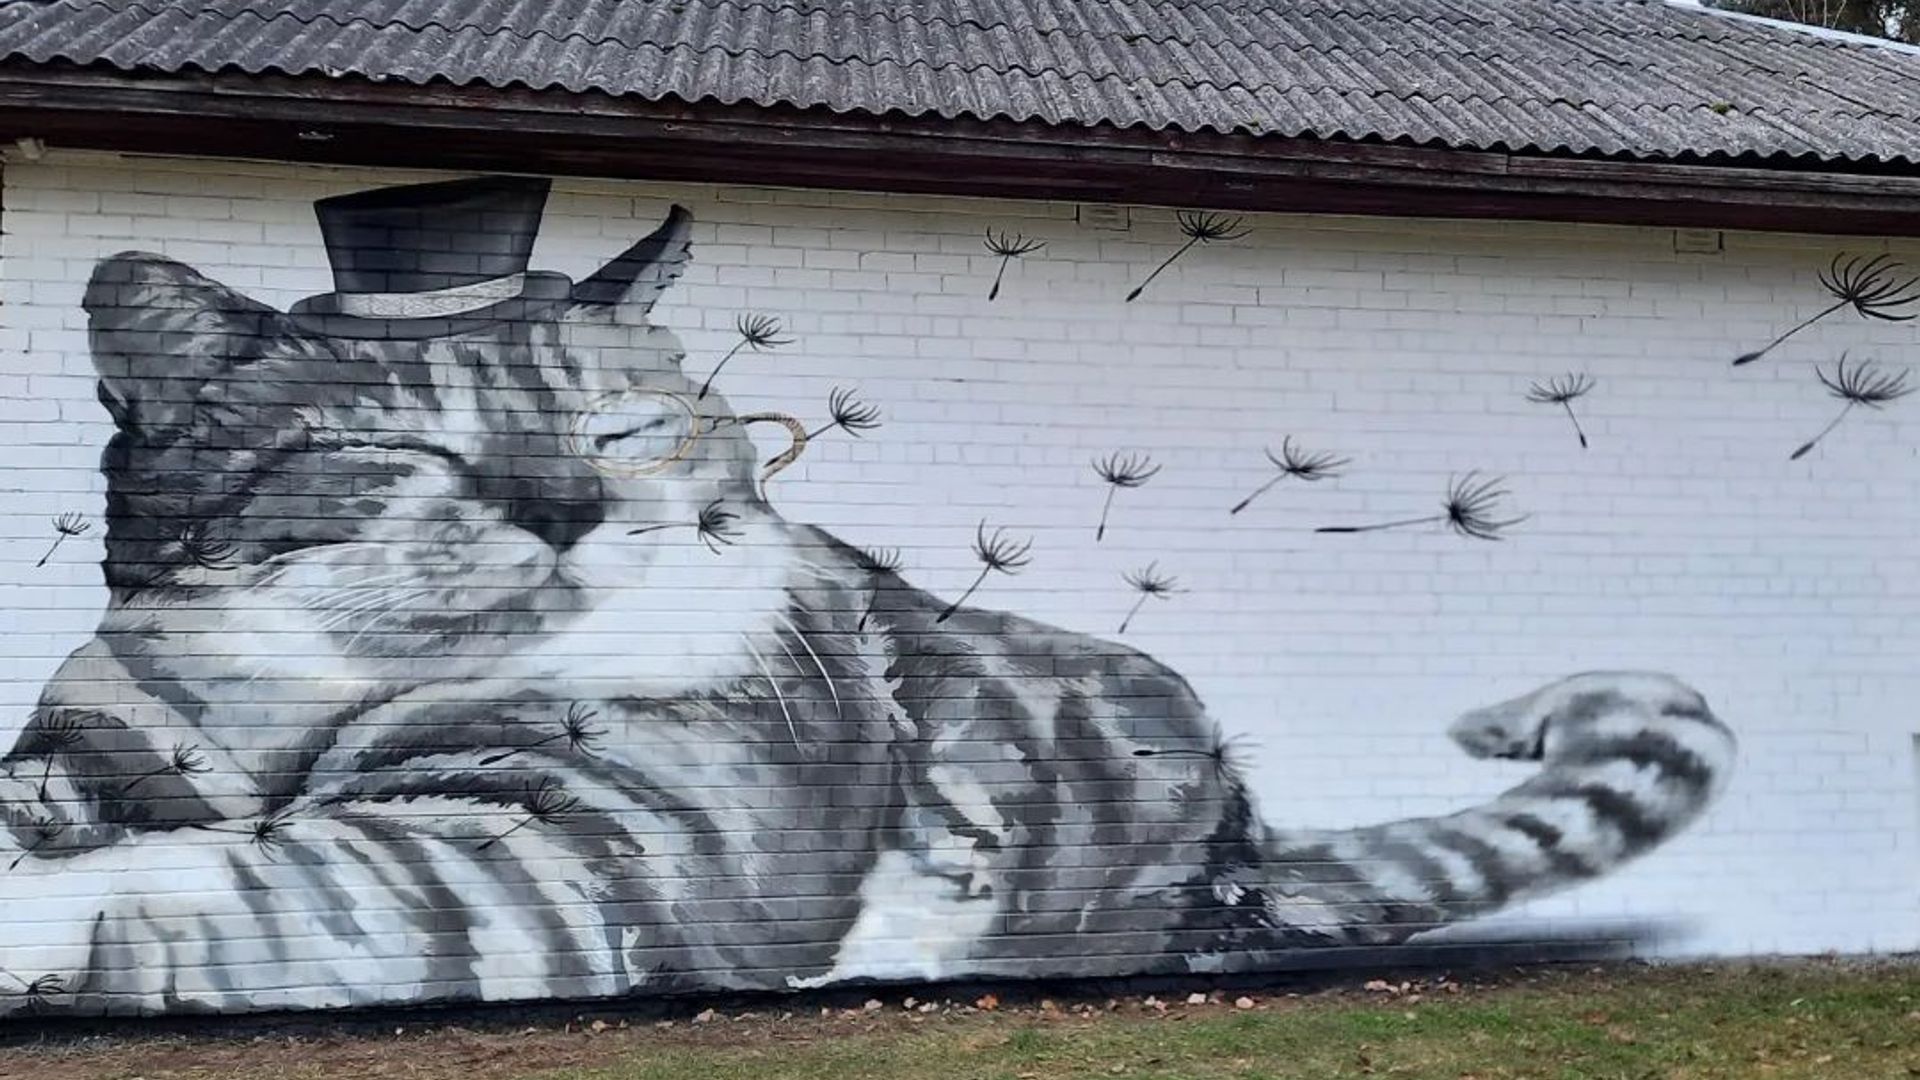 Street Art in Lithuania Regions